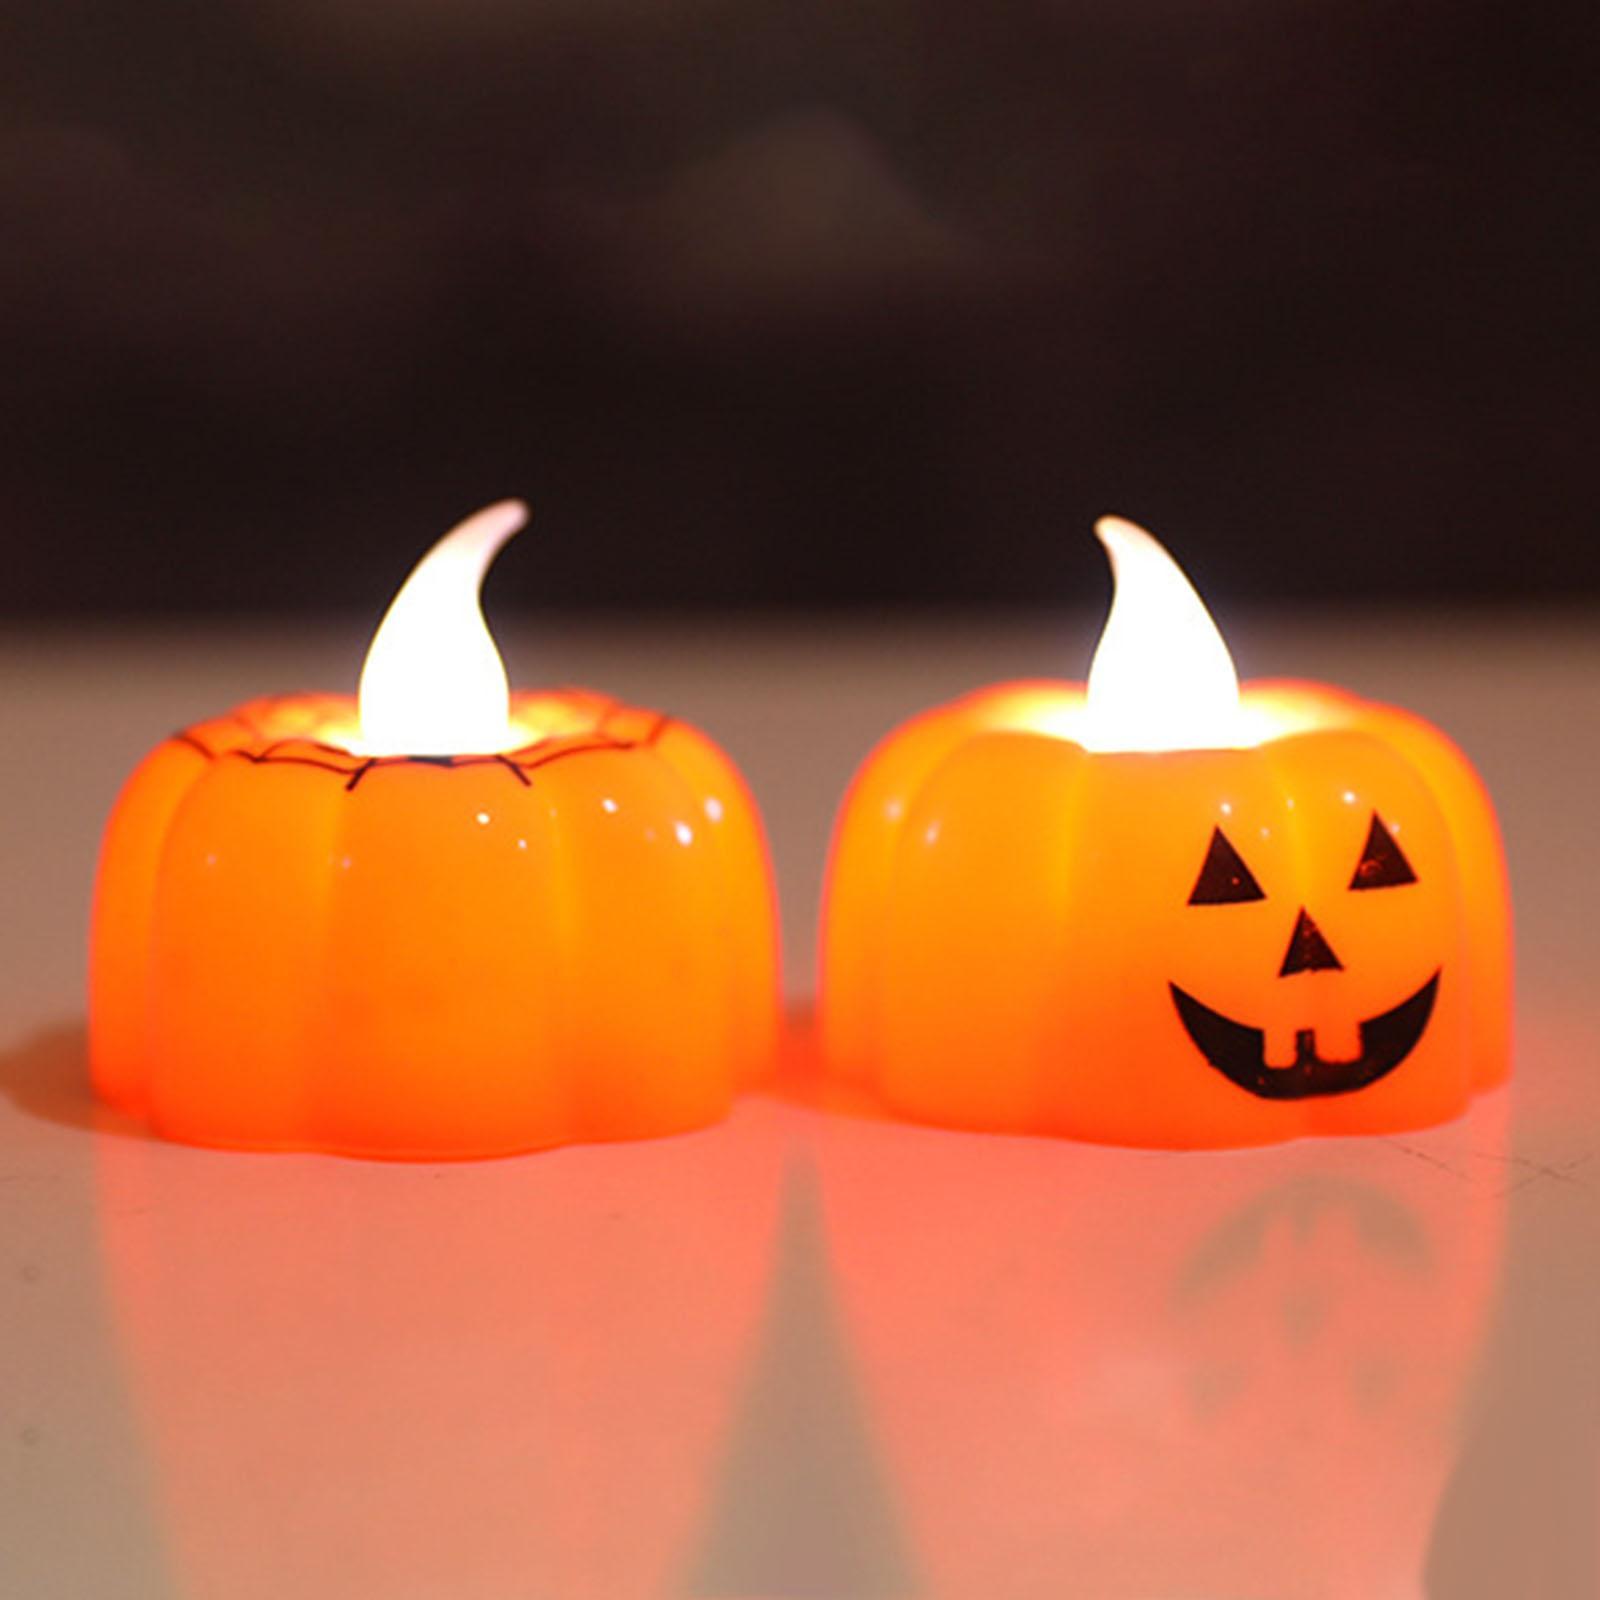 3D Pumpkin Candle Light Halloween LED Tealights Fall Festival